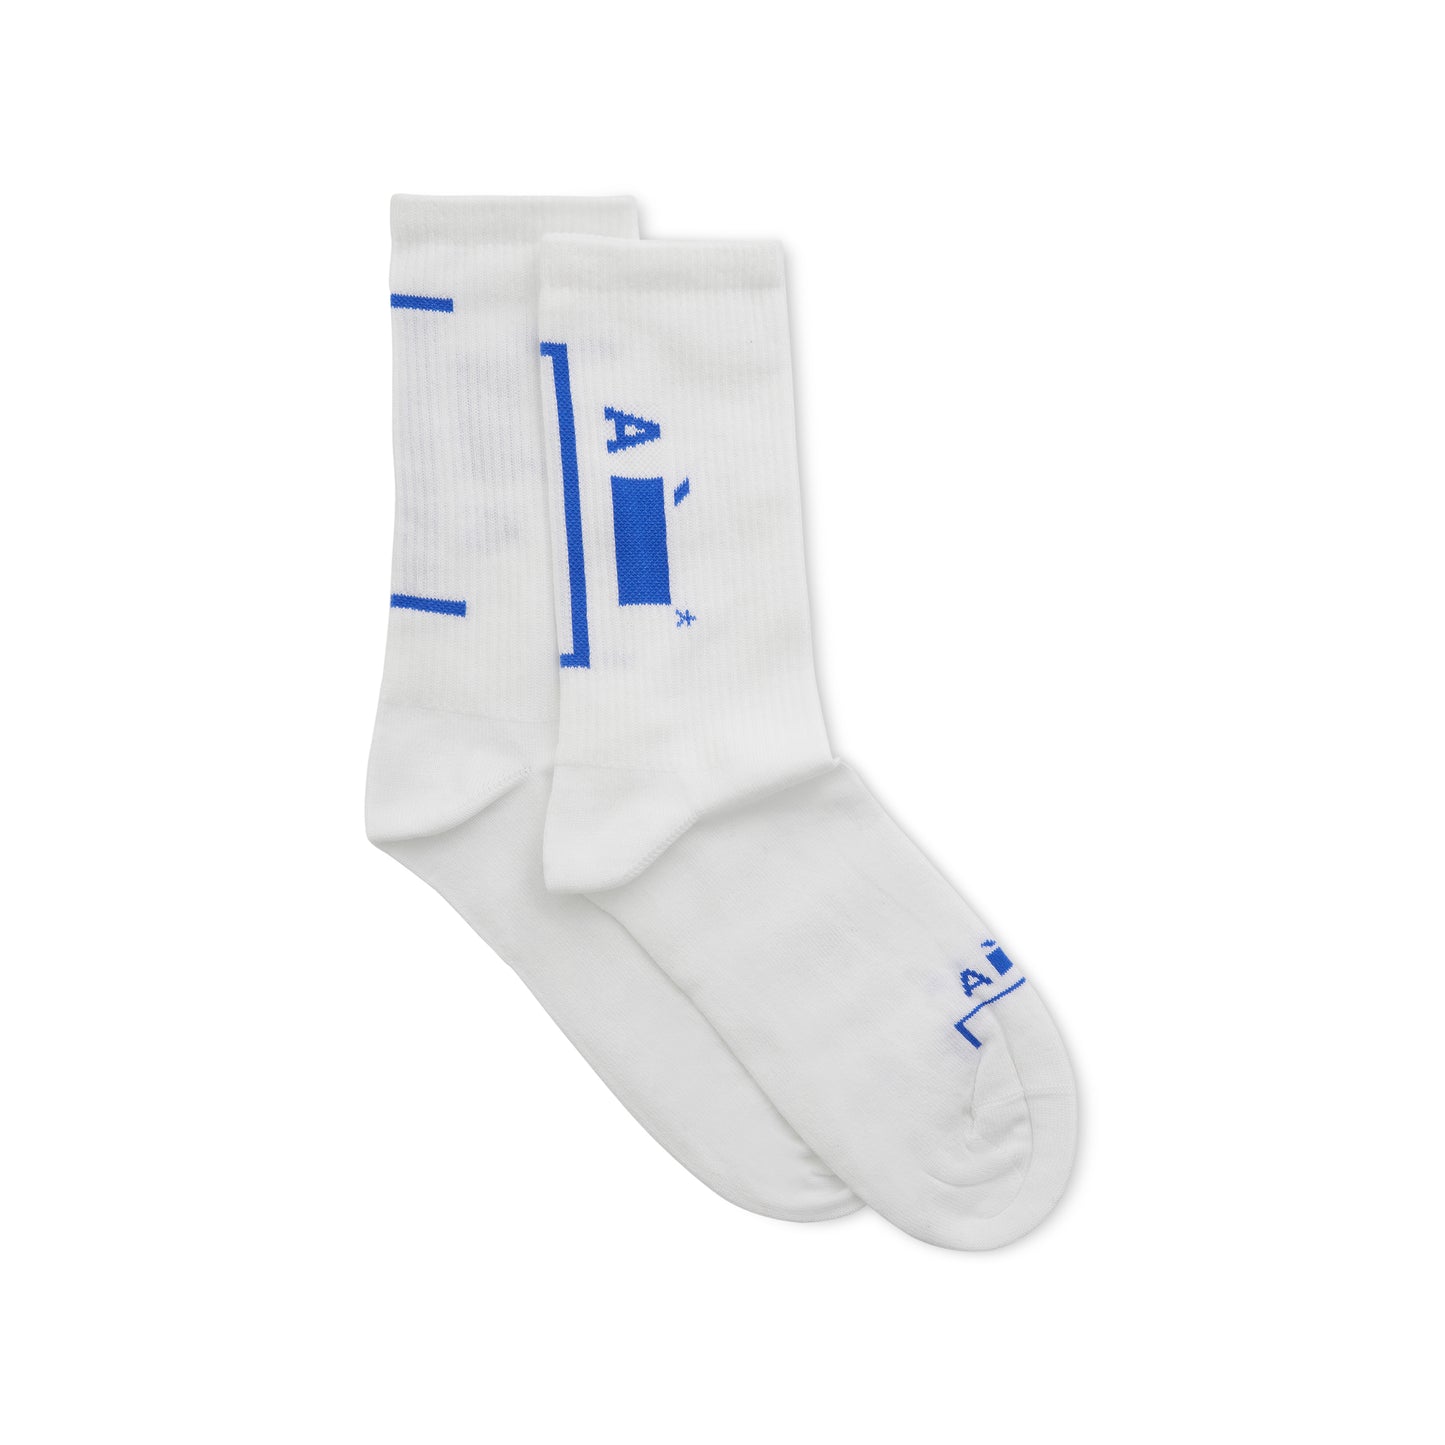 Bracket Sock in White